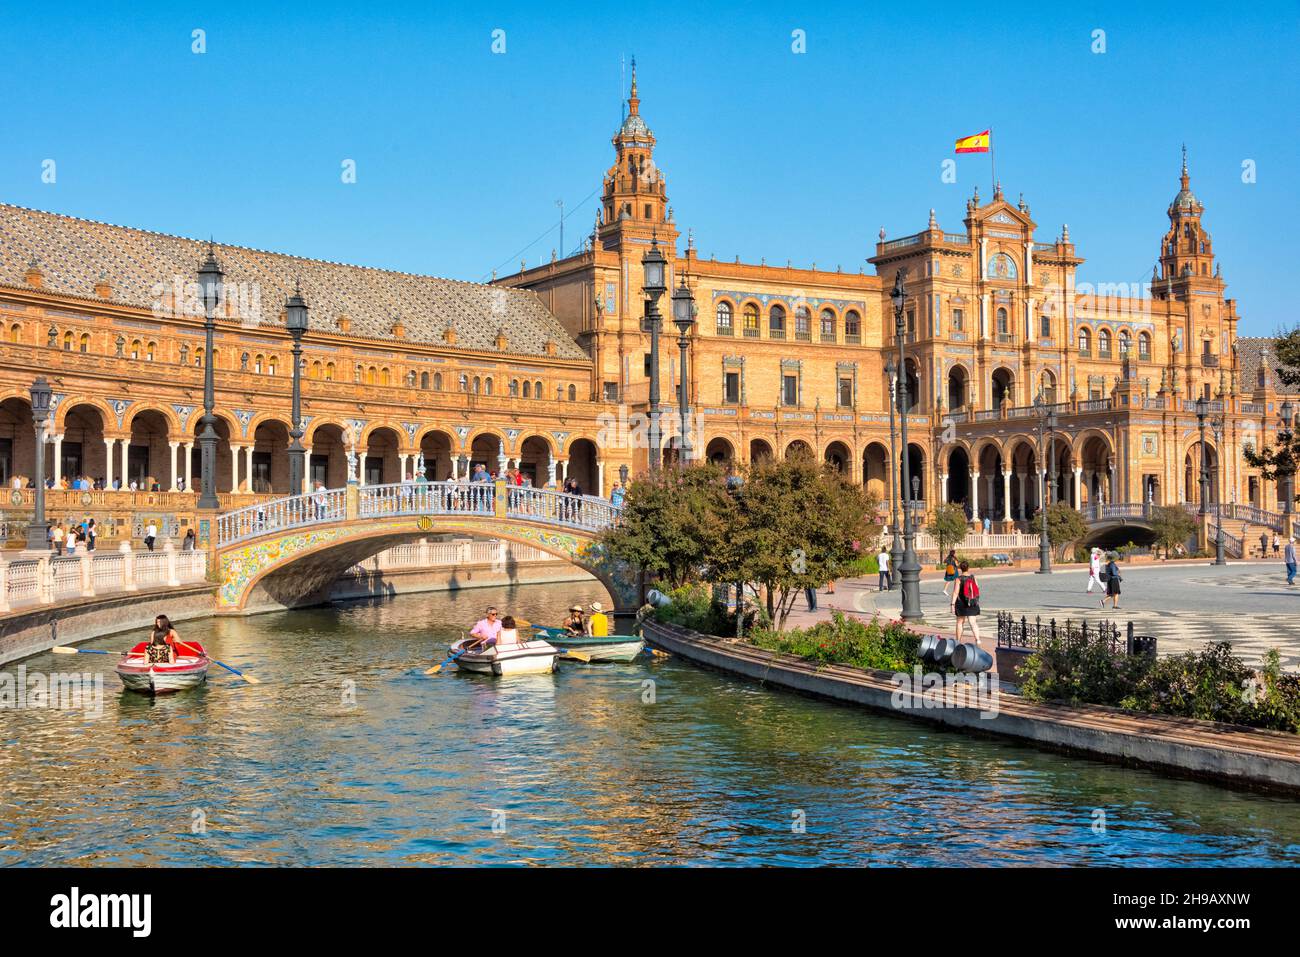 Plaza de Espana, les gens ramer bateau sur la douve avec des ponts représentant les quatre anciens royaumes de l'Espagne, Séville, province de Séville, Andalousie Aut Banque D'Images